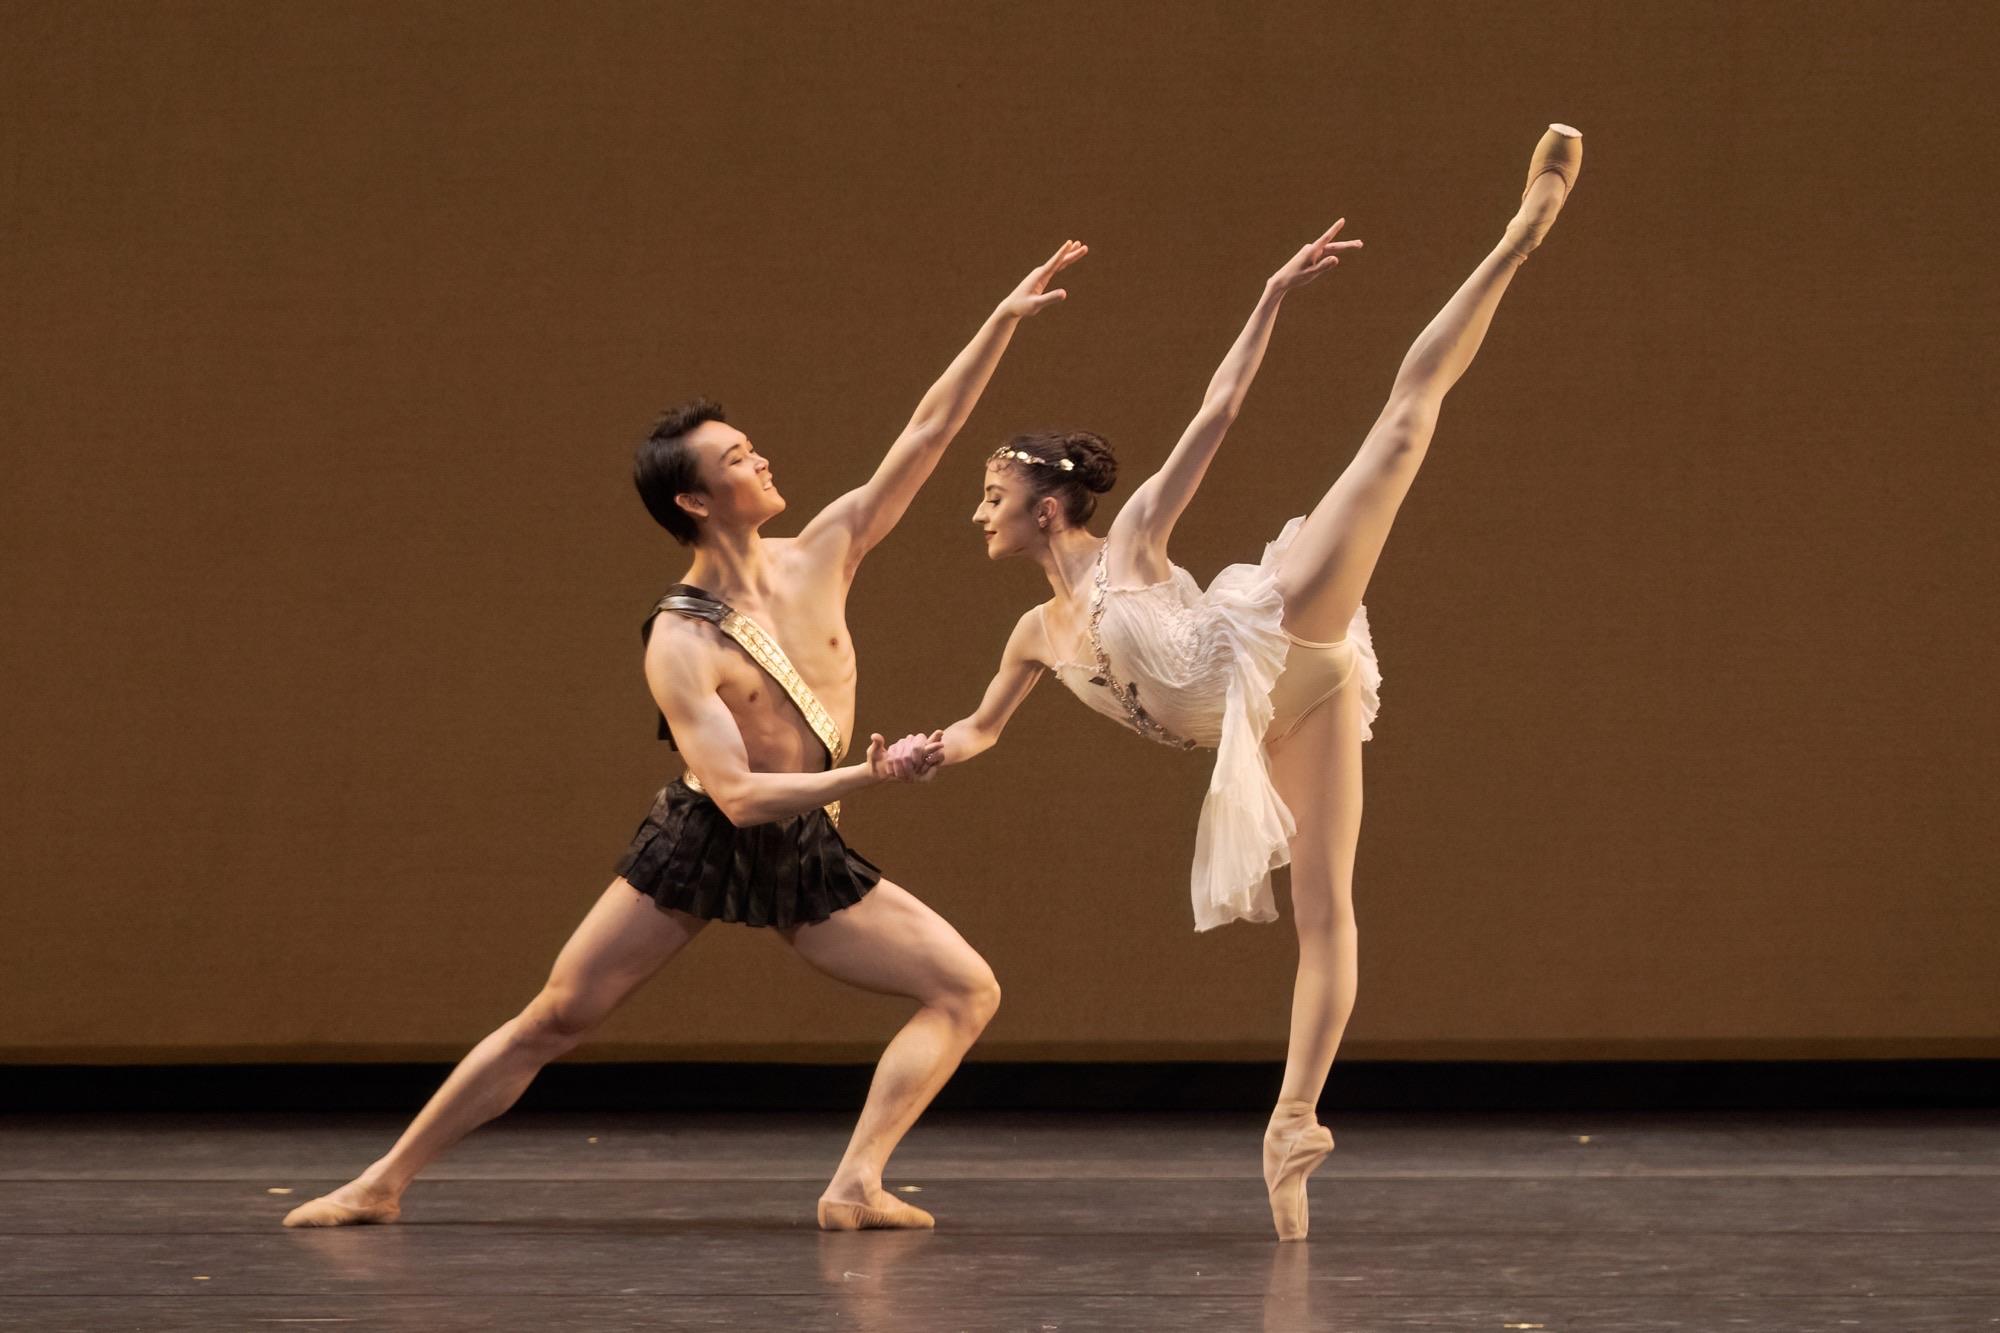 Daichi Ikarashi and Viola Pantuso in Diana and Acteon. Photo by Karolina Kuras. Courtesy of The National Ballet of Canada.